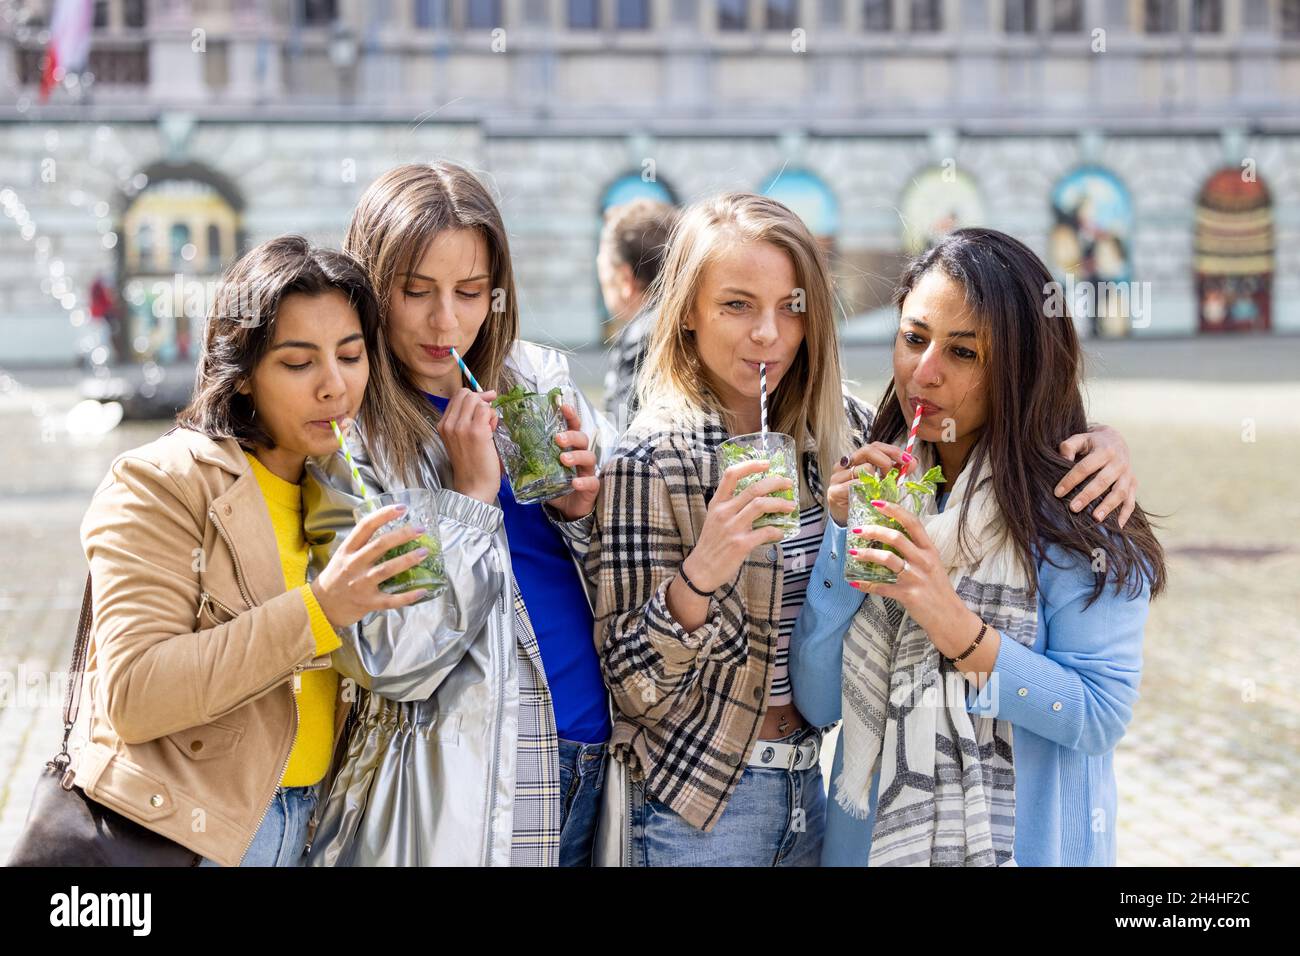 Antwerpen, Belgien, 21. Mai 2021, Muti Ethnische Gruppe von Freundinnen, die Spaß haben, Cocktails im Freien in der Stadt im Bar-Restaurant zu trinken. Hochwertige Fotos Stockfoto